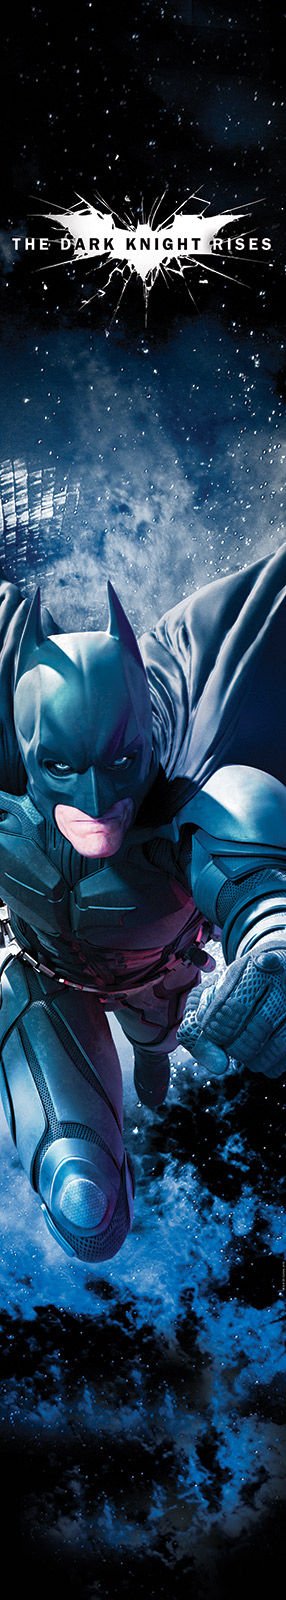 Foto tapeta: Batman (The Dark Knight Rises) - 50x280 cm